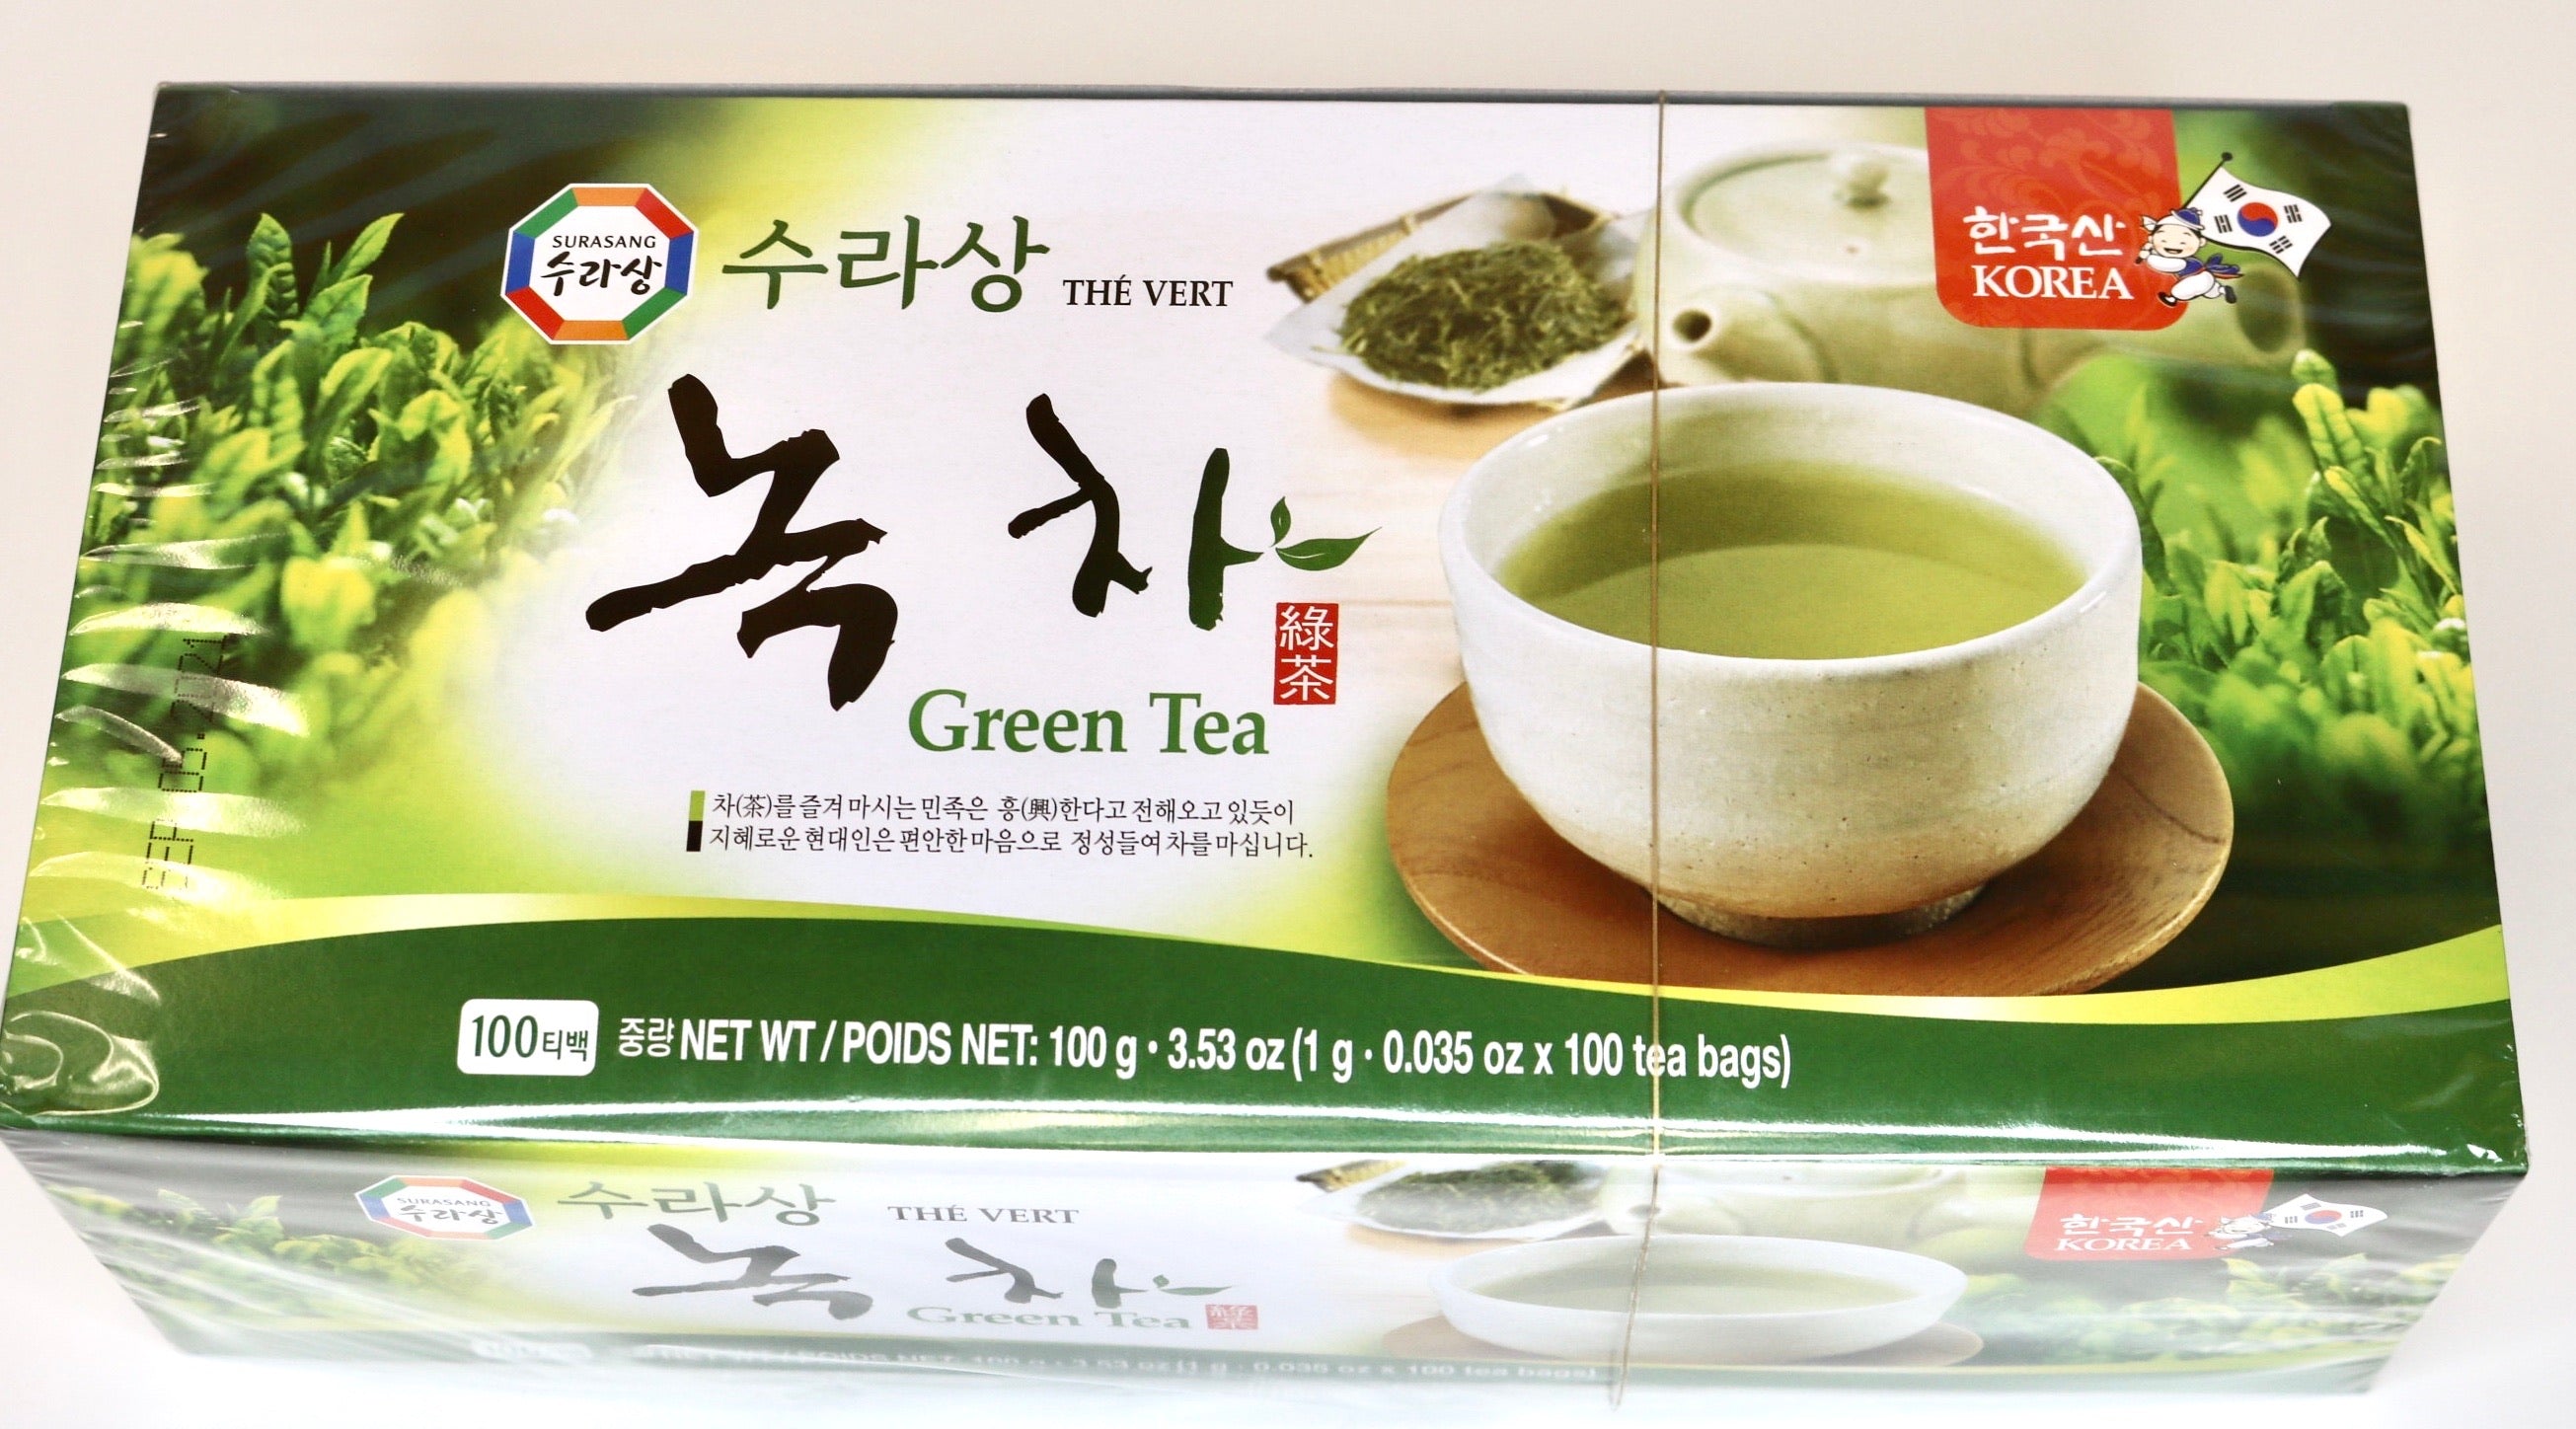 Surasang Green Tea